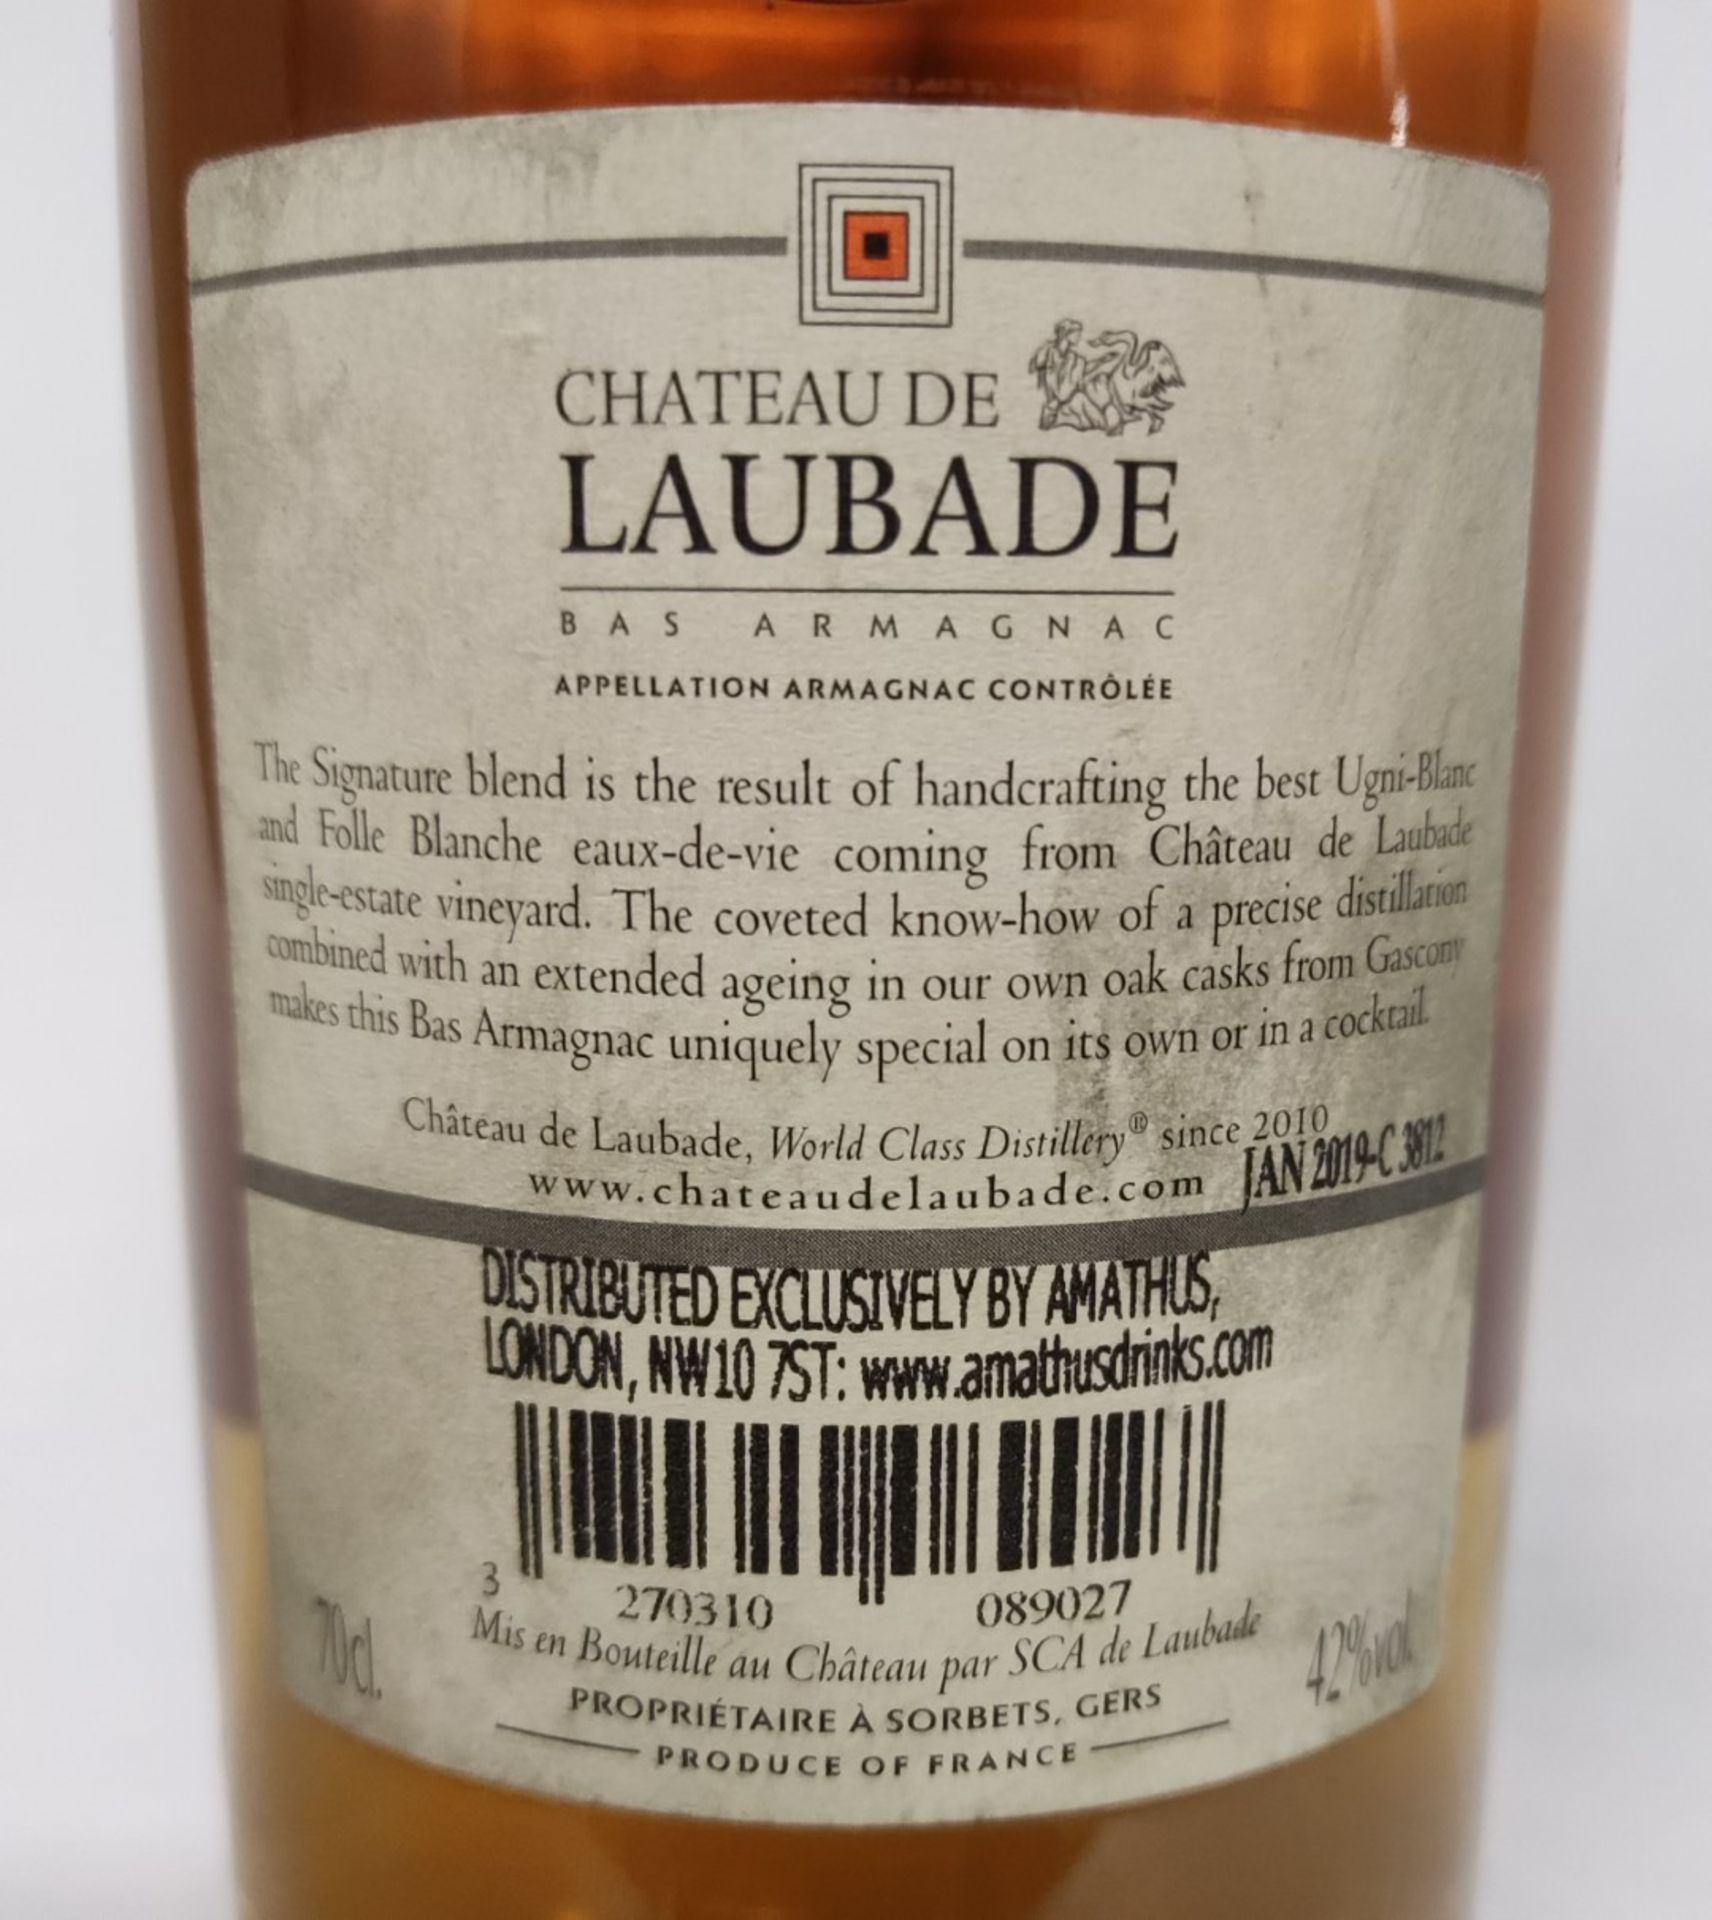 1 x Bottle of Chateau De Laubade Signature Armagnac Vs 42% - RRP £36 - Image 2 of 7